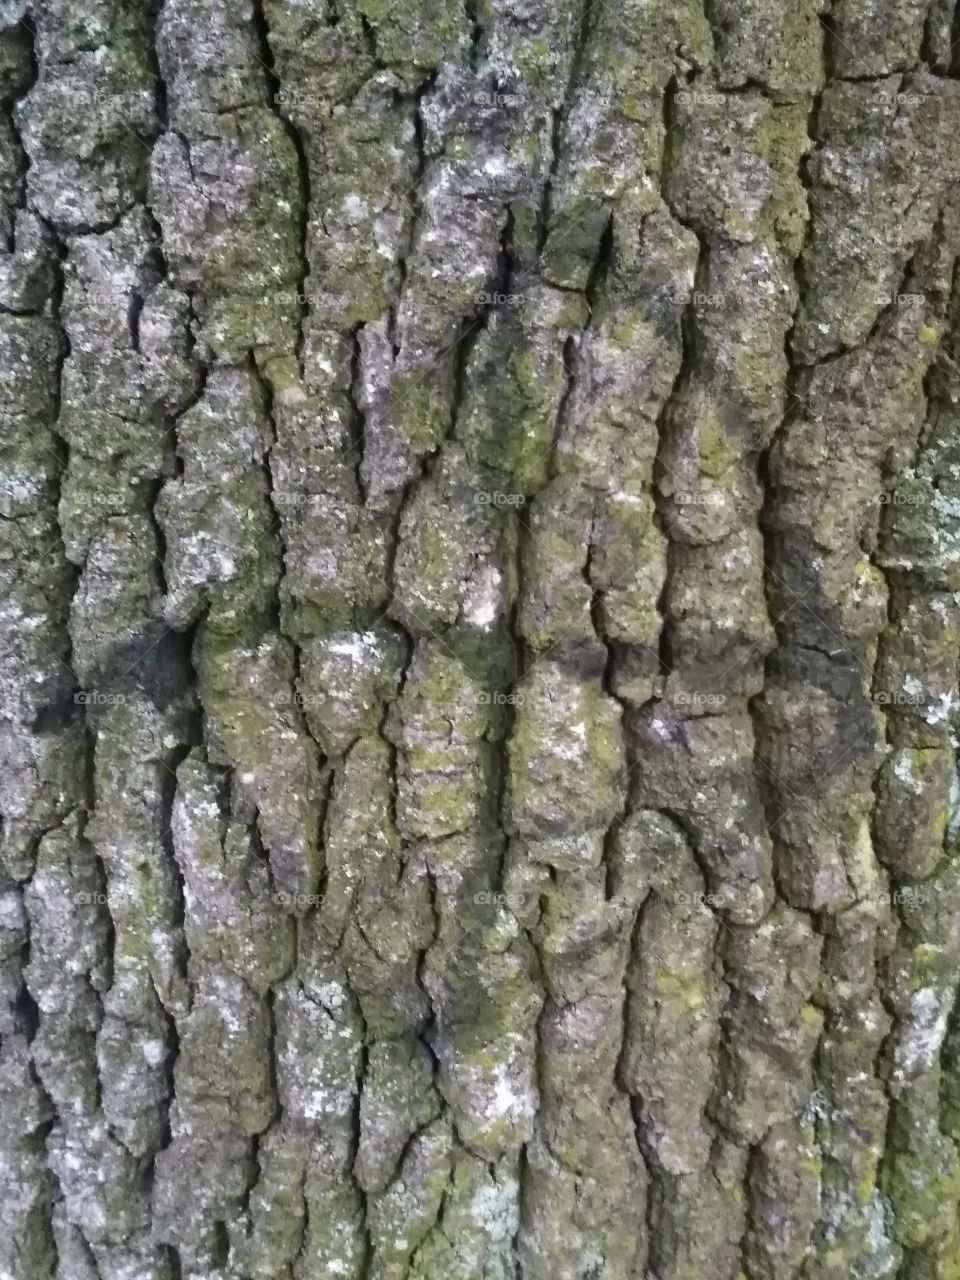 Tree bark with grafity.